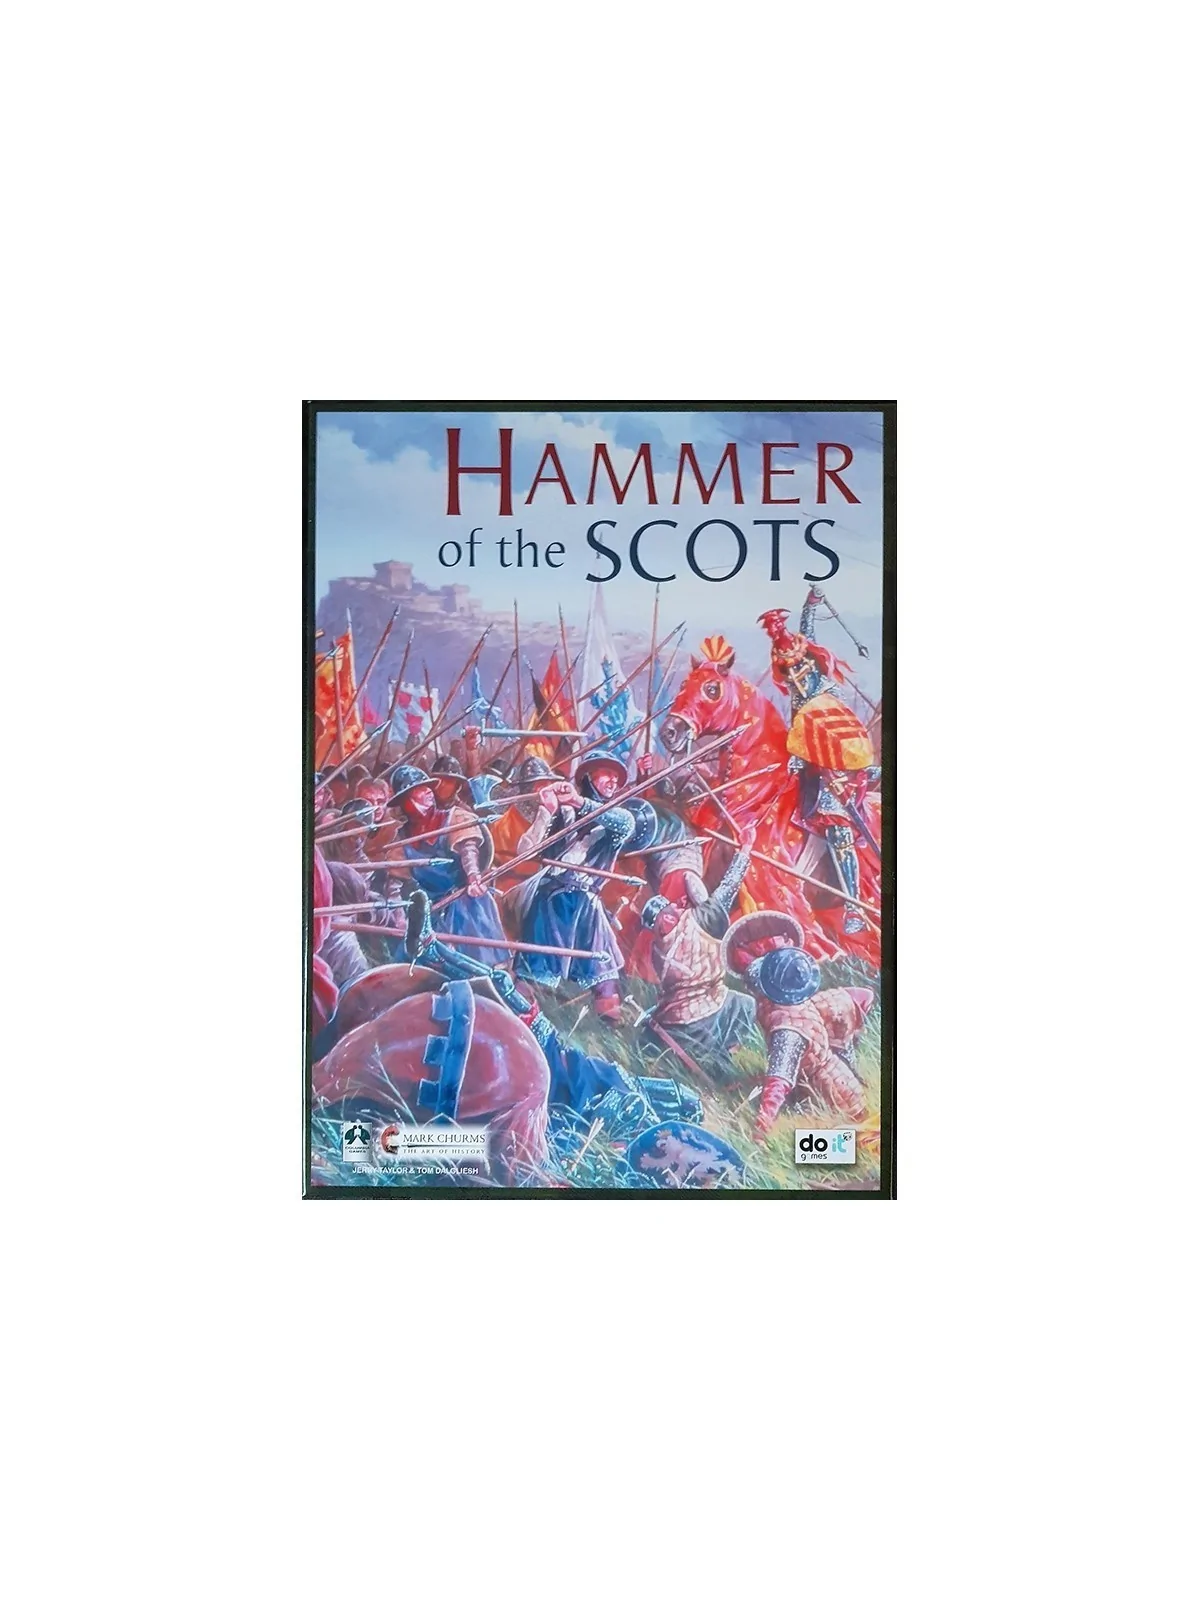 Comprar Hammer of the Scots barato al mejor precio 53,95 € de Do It Ga